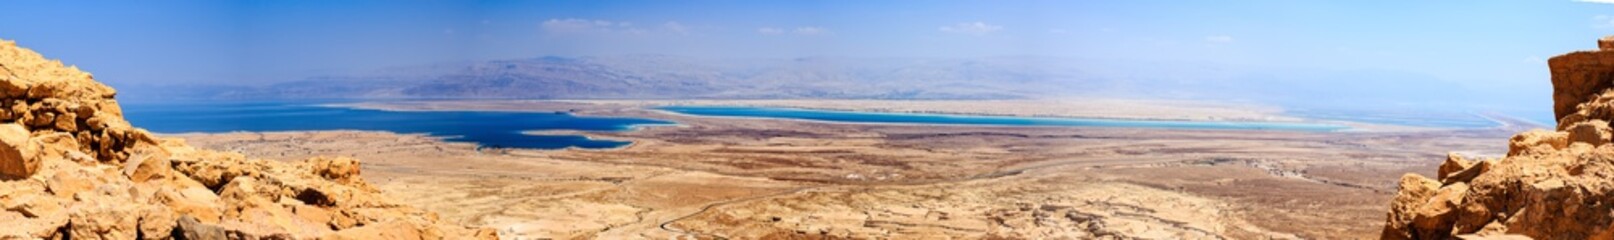 Paysage panoramique du désert de Judée et de la mer Morte. Vue depuis la forteresse de Massada